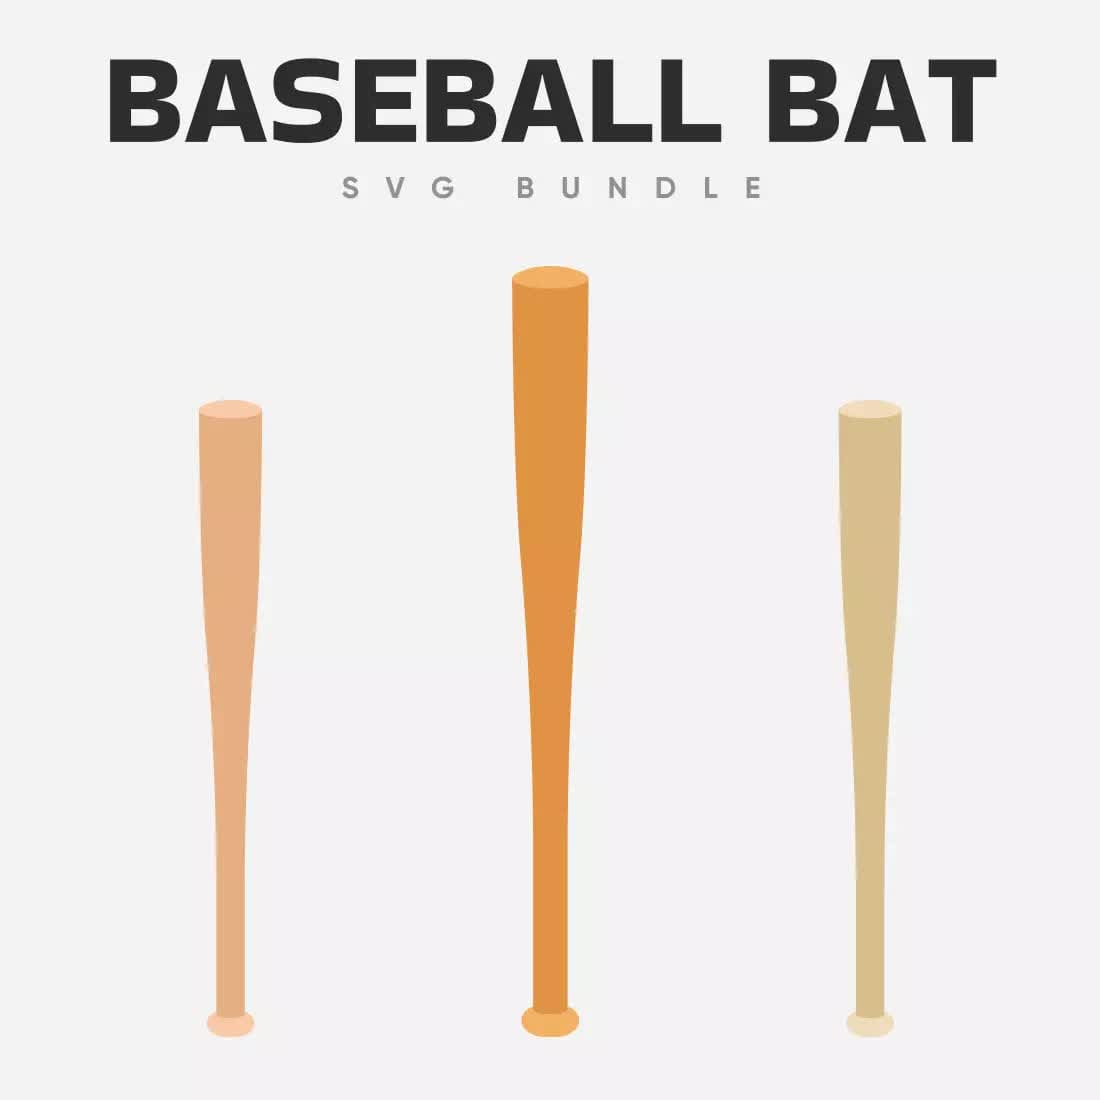 Baseball Bat SVG Bundle Preview 2.